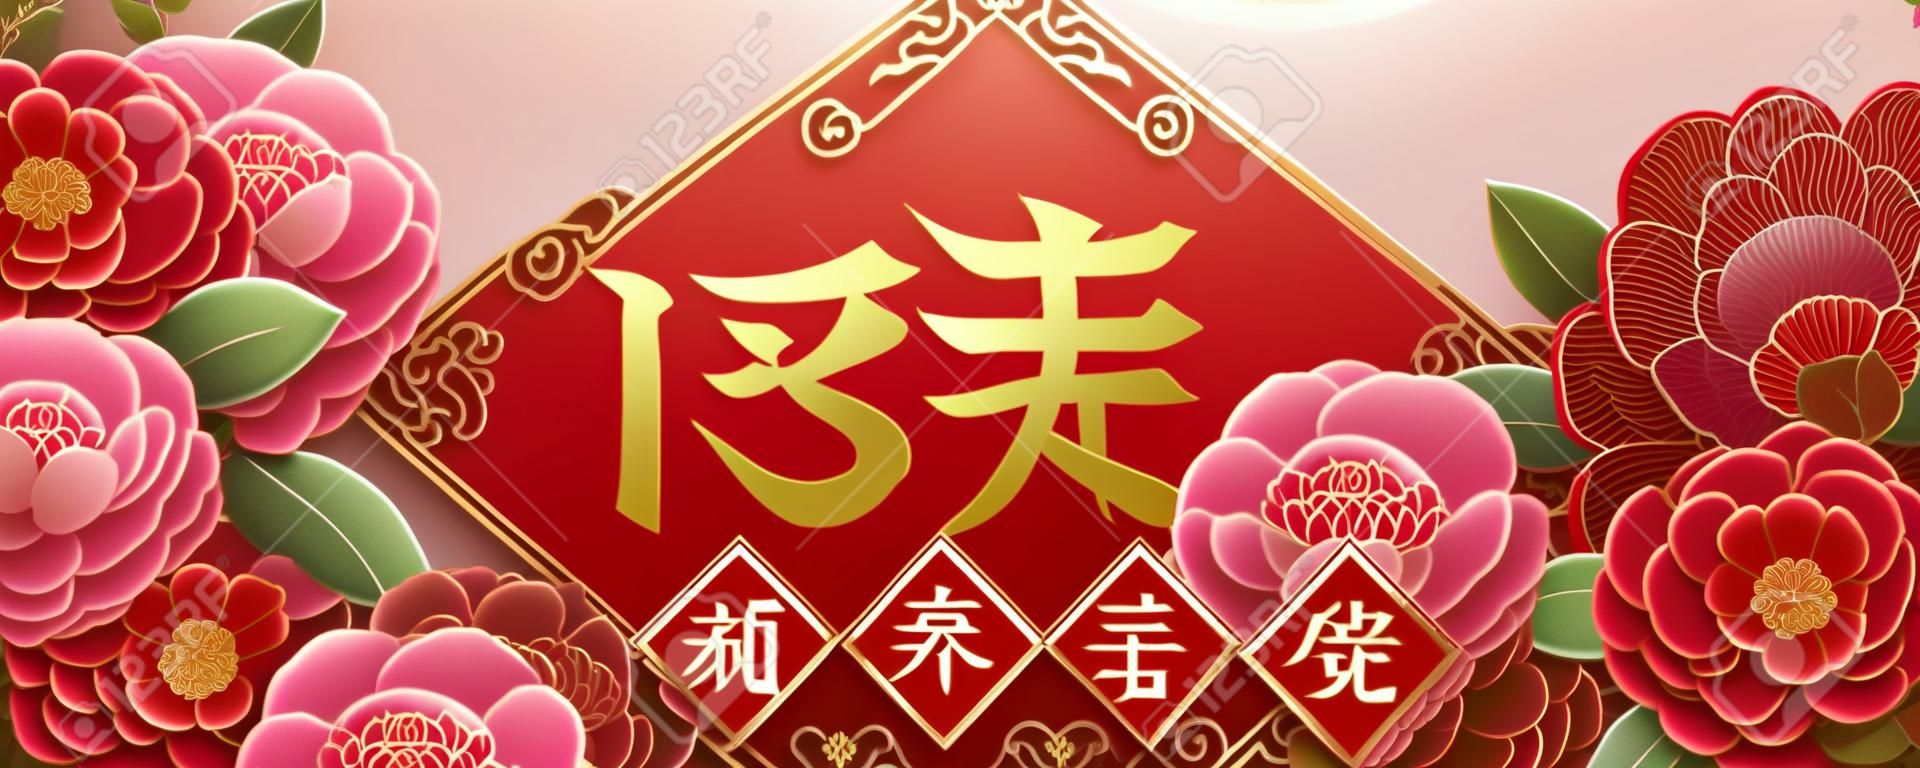 Conception de l'année lunaire avec de belles fleurs de pivoine, printemps écrit en chinois au milieu